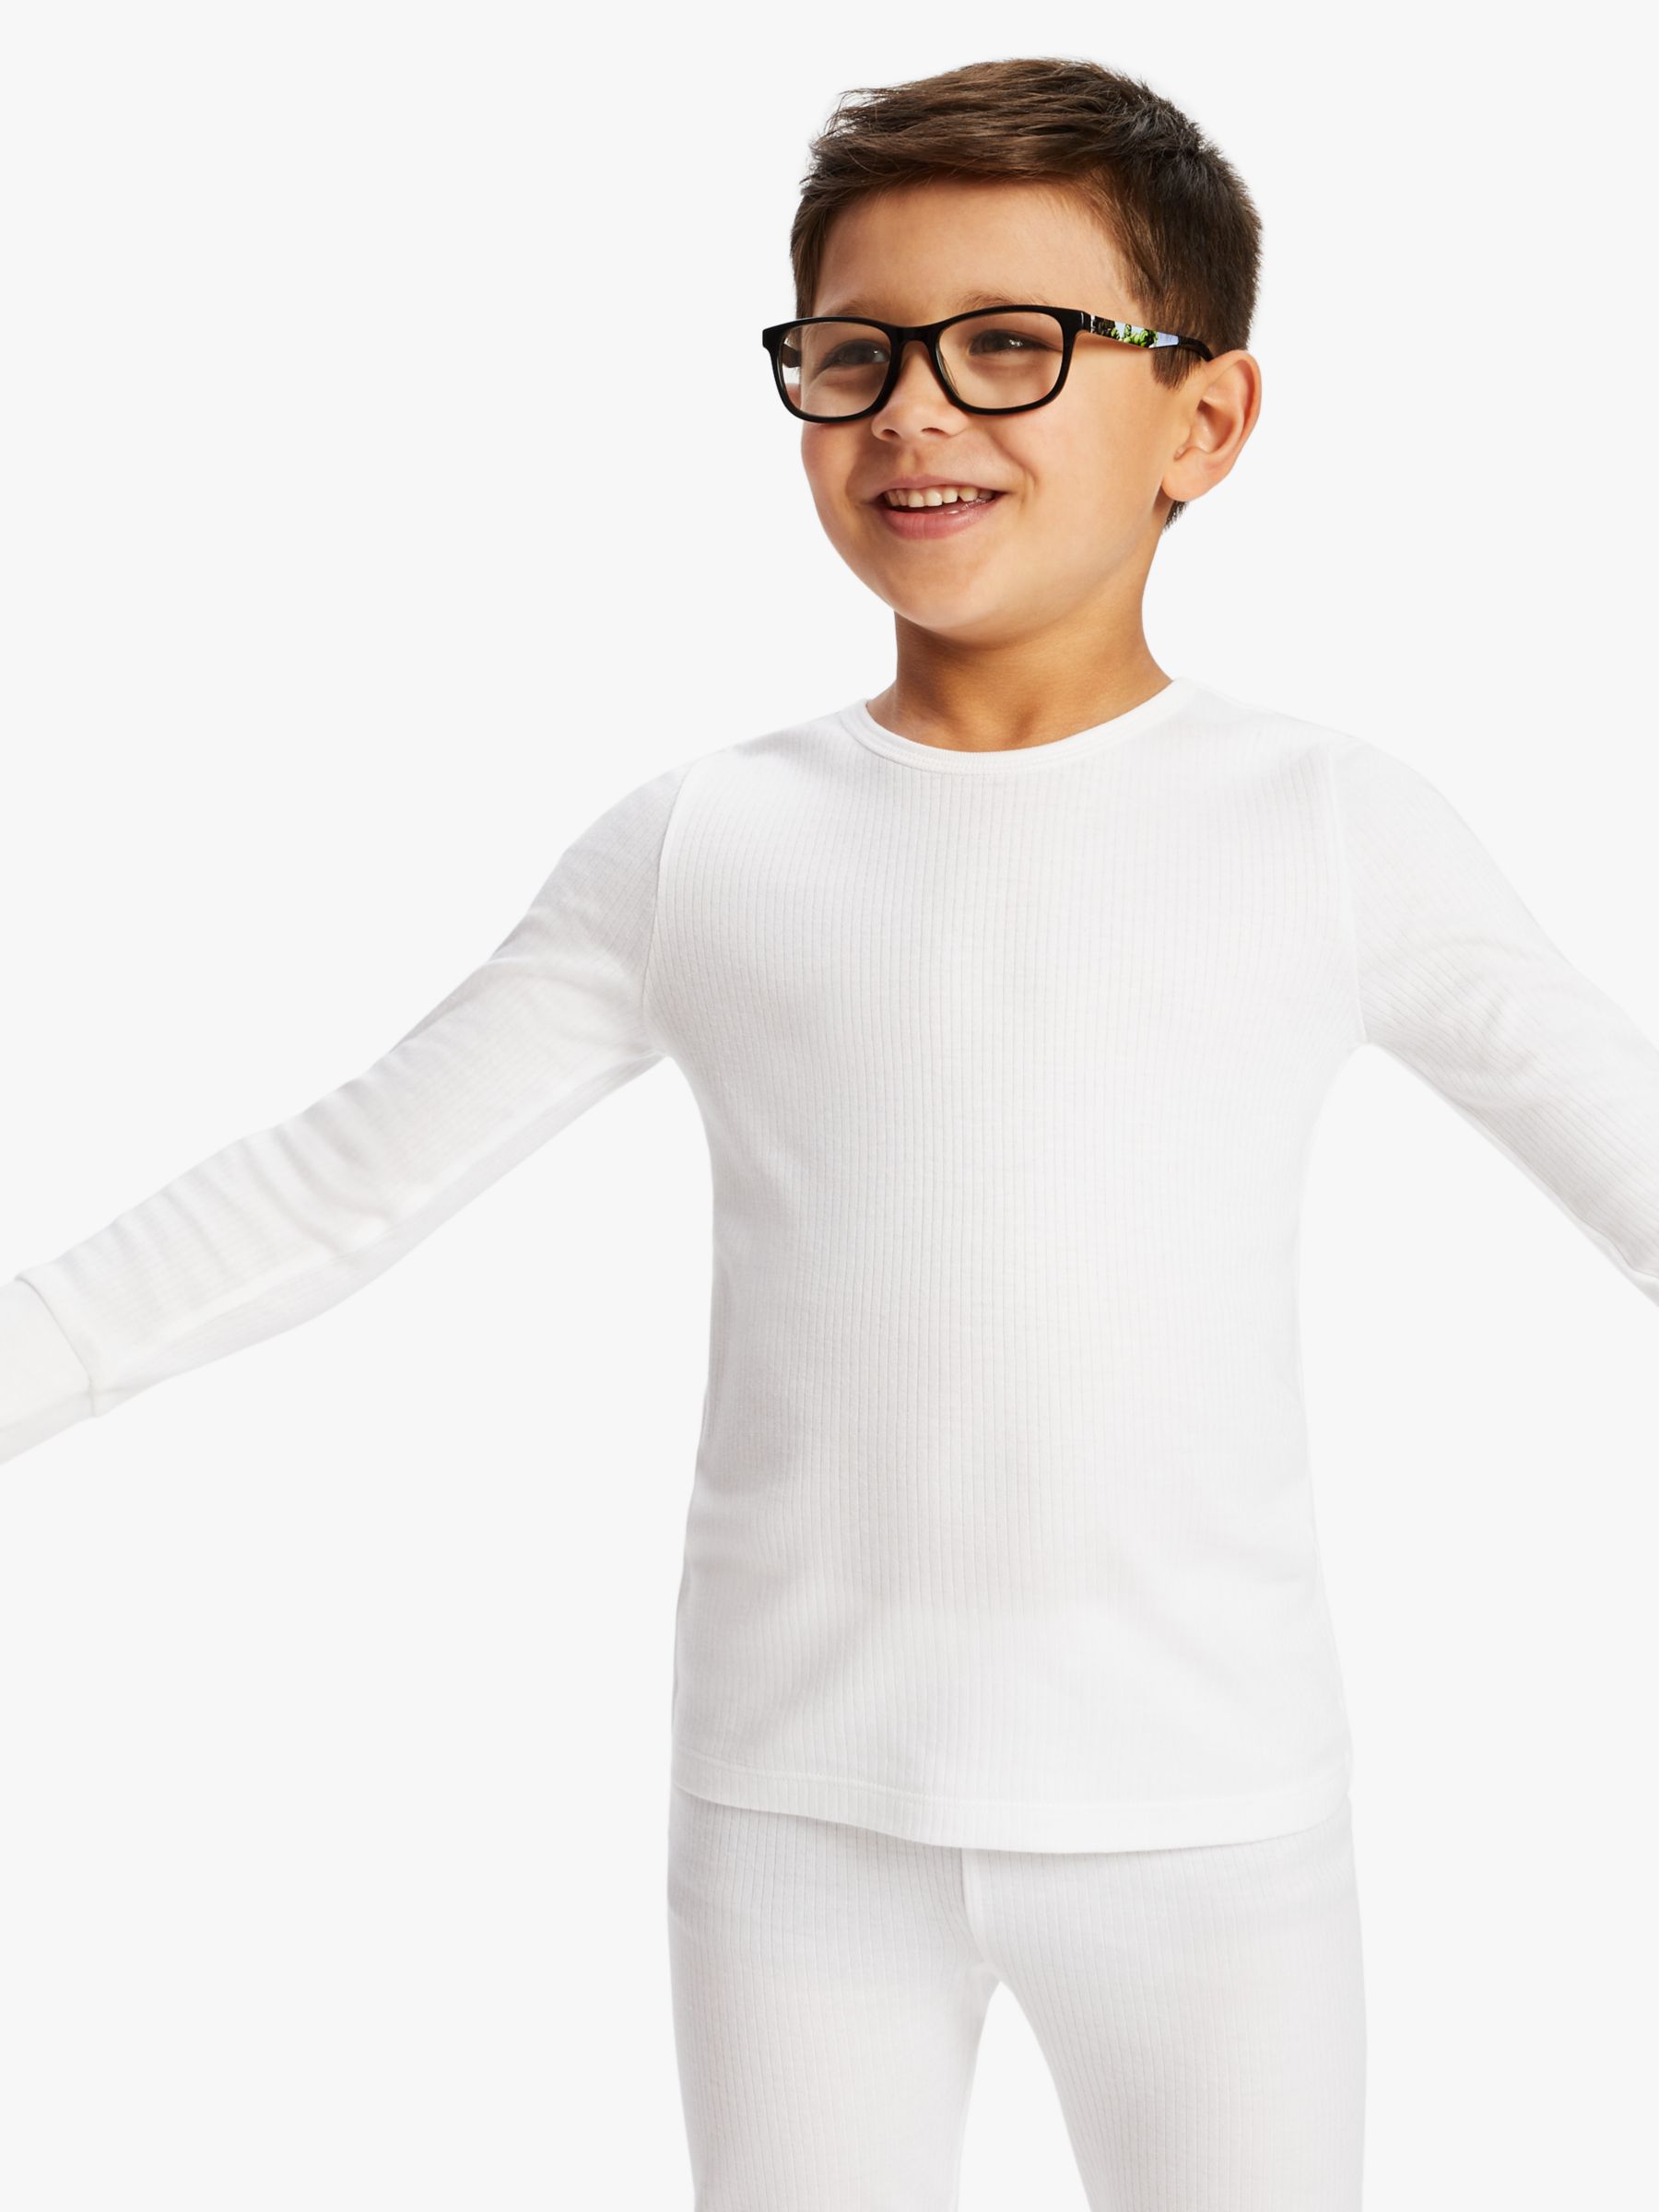 John Lewis Kids' Thermal Long Sleeve Top, Pack of 2, White at John